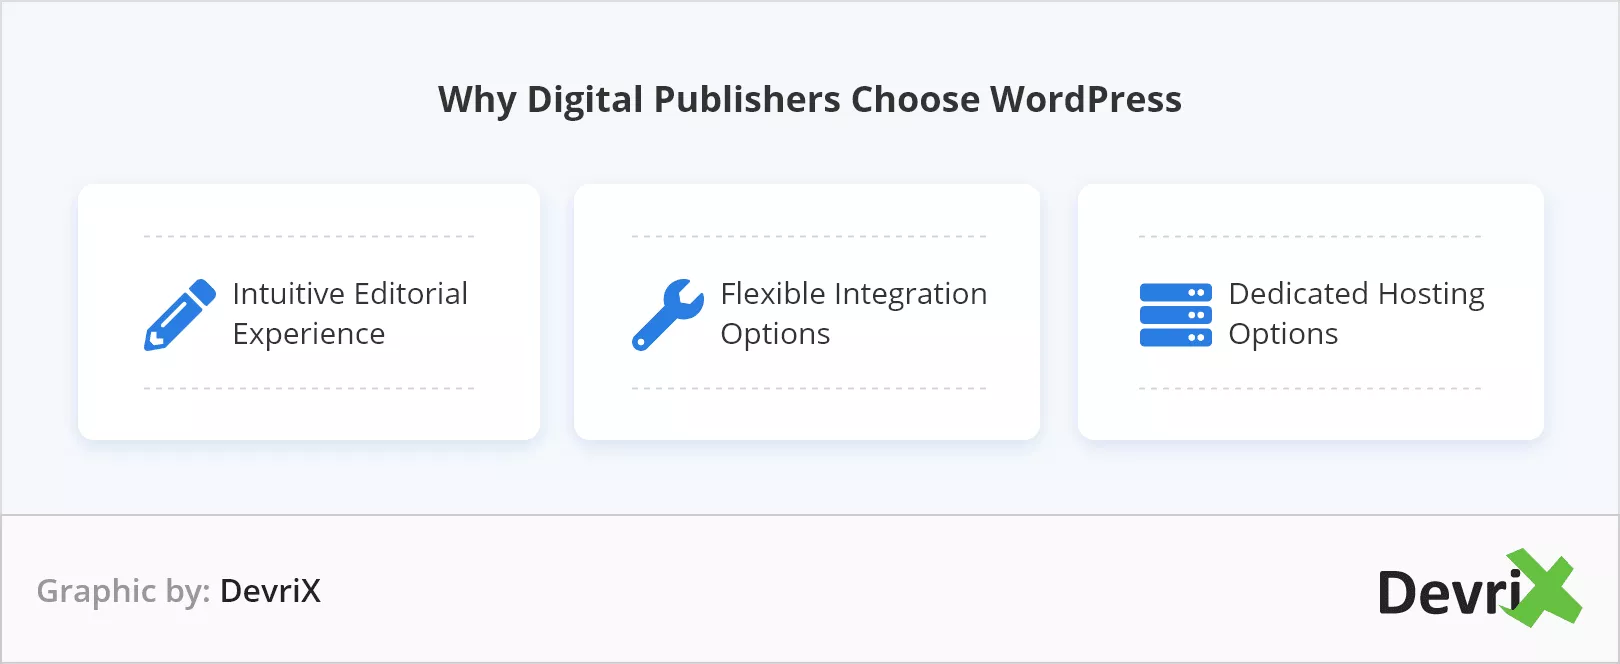 ทำไมผู้เผยแพร่โฆษณาดิจิทัลจึงเลือกใช้ WordPress